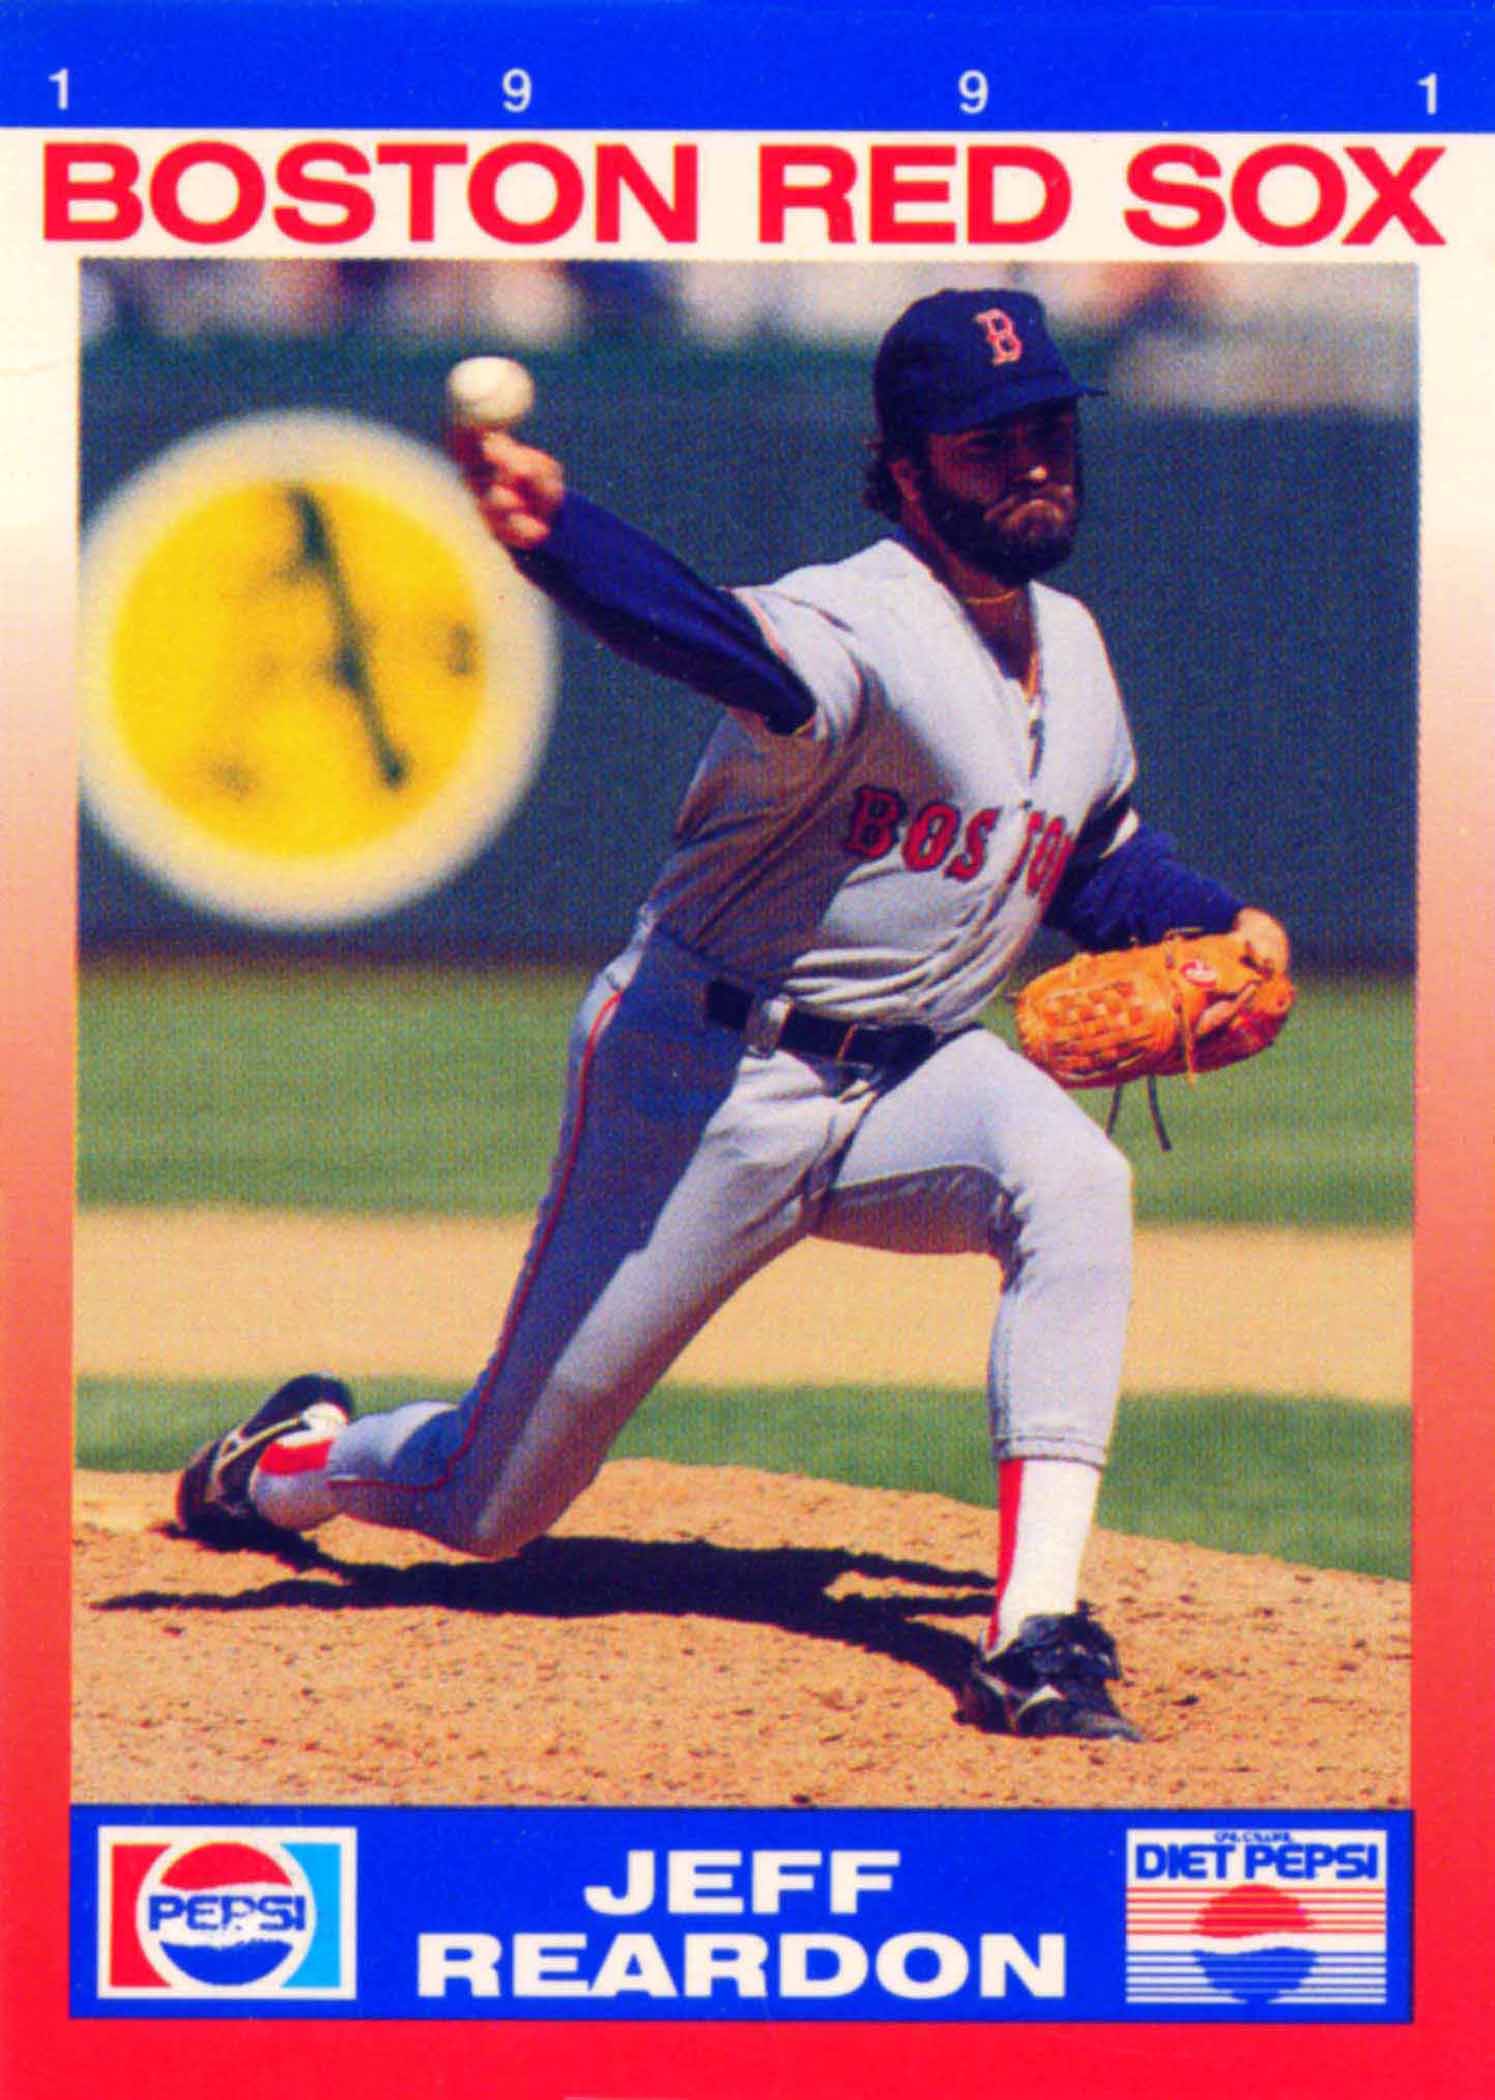 1991 Red Sox Pepsi